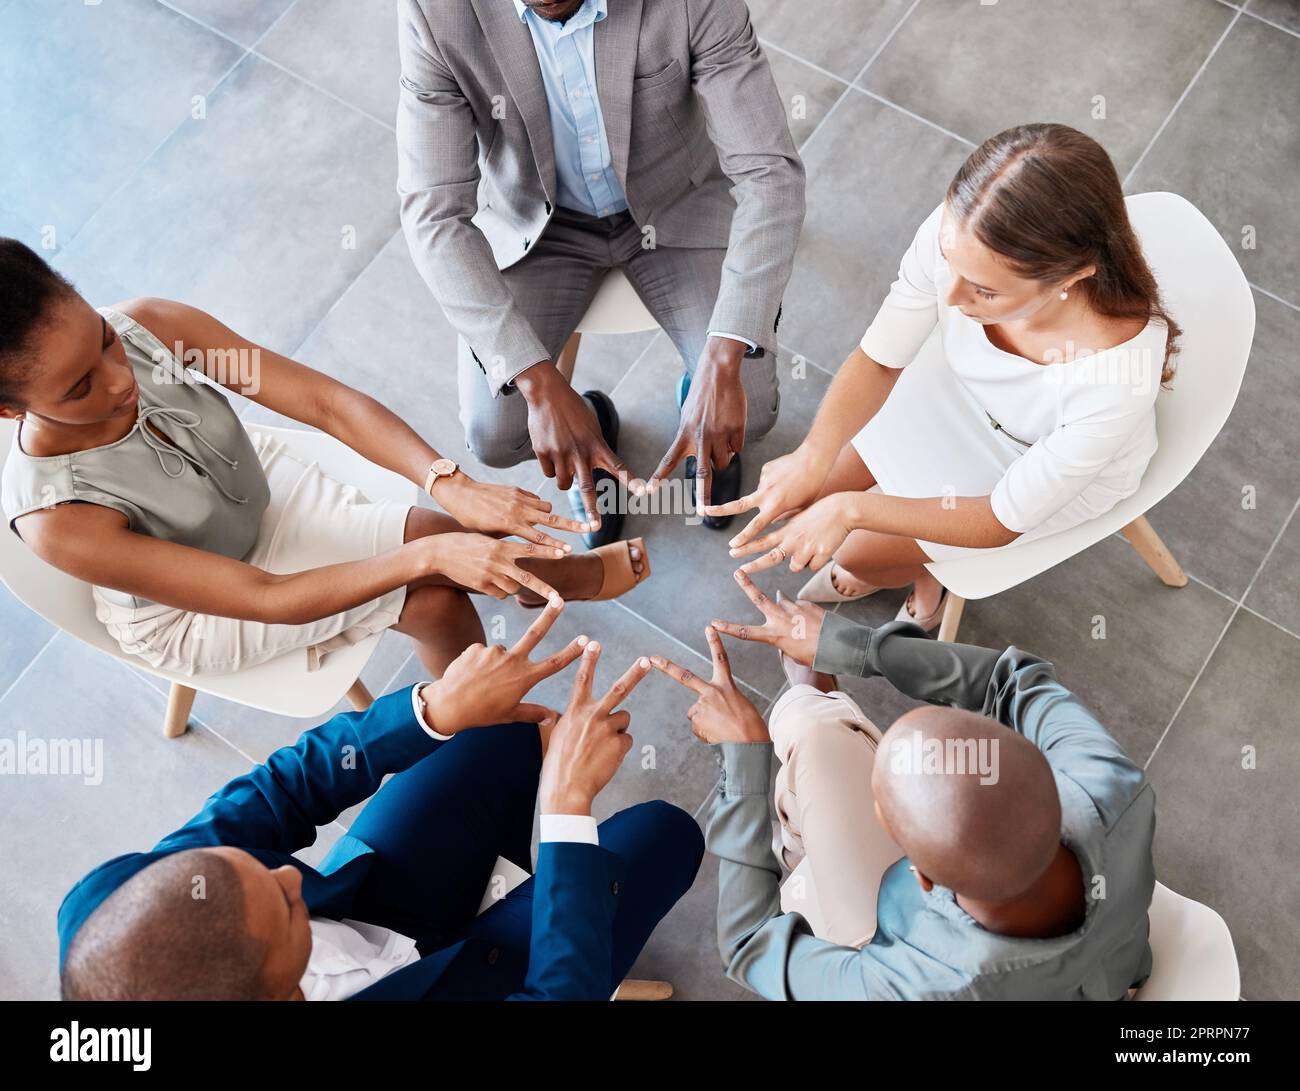 Star Hand, Teamarbeit und Zusammenarbeit von Geschäftsleuten für Mission, Ziel oder Erfolg von oben. Unternehmensteams, Vielfalt oder Gruppenunterstützung, Vertrauen oder Motivation in Solidarität, Einheit oder Vereinigung. Stockfoto